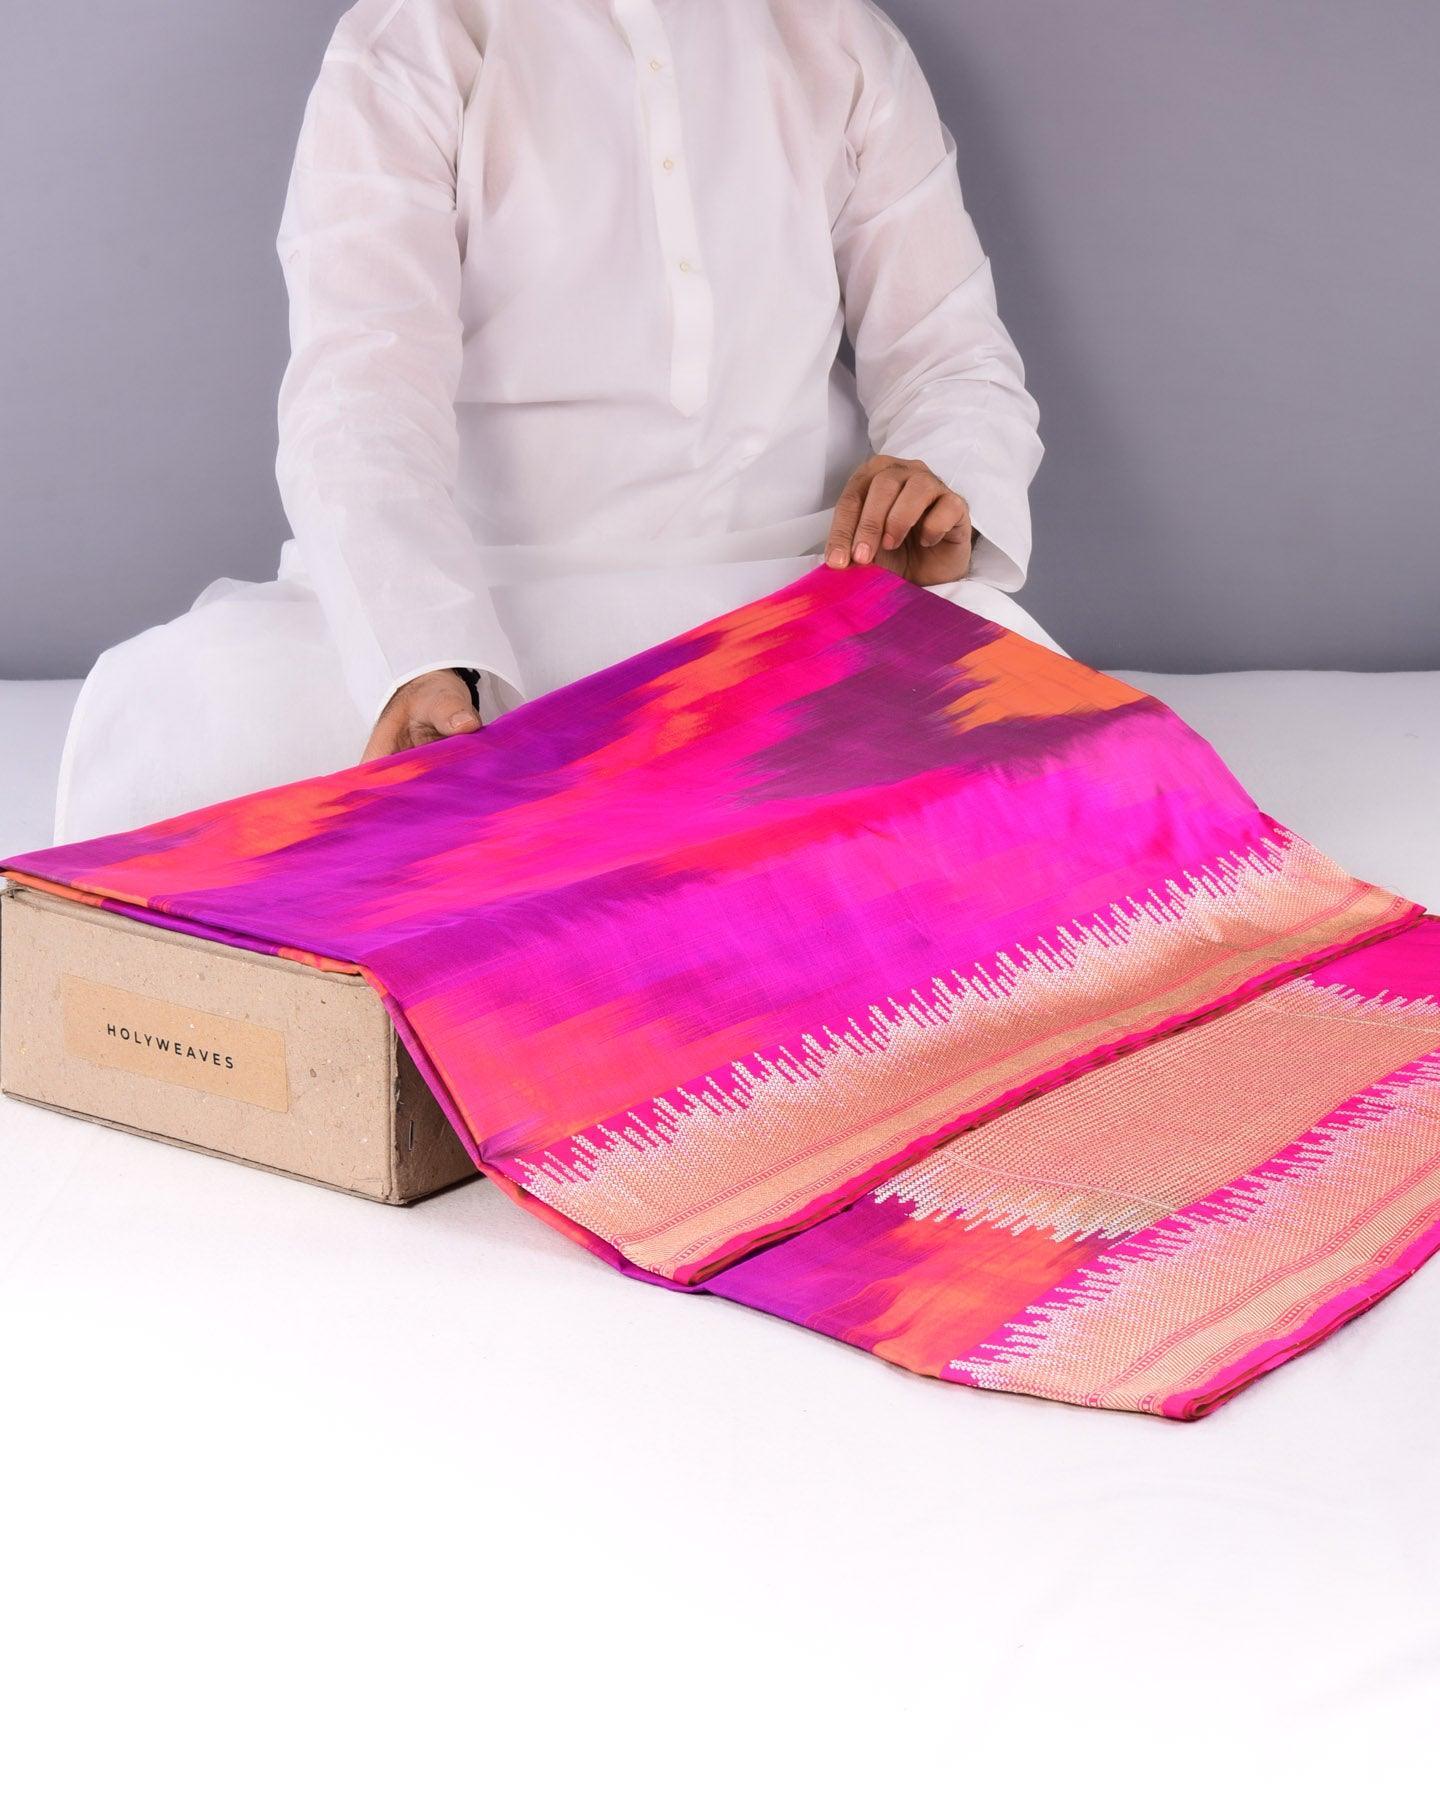 Vibgyor Pink Banarasi Iridescent Kadhuan Brocade Handwoven Katan Silk Saree - By HolyWeaves, Benares